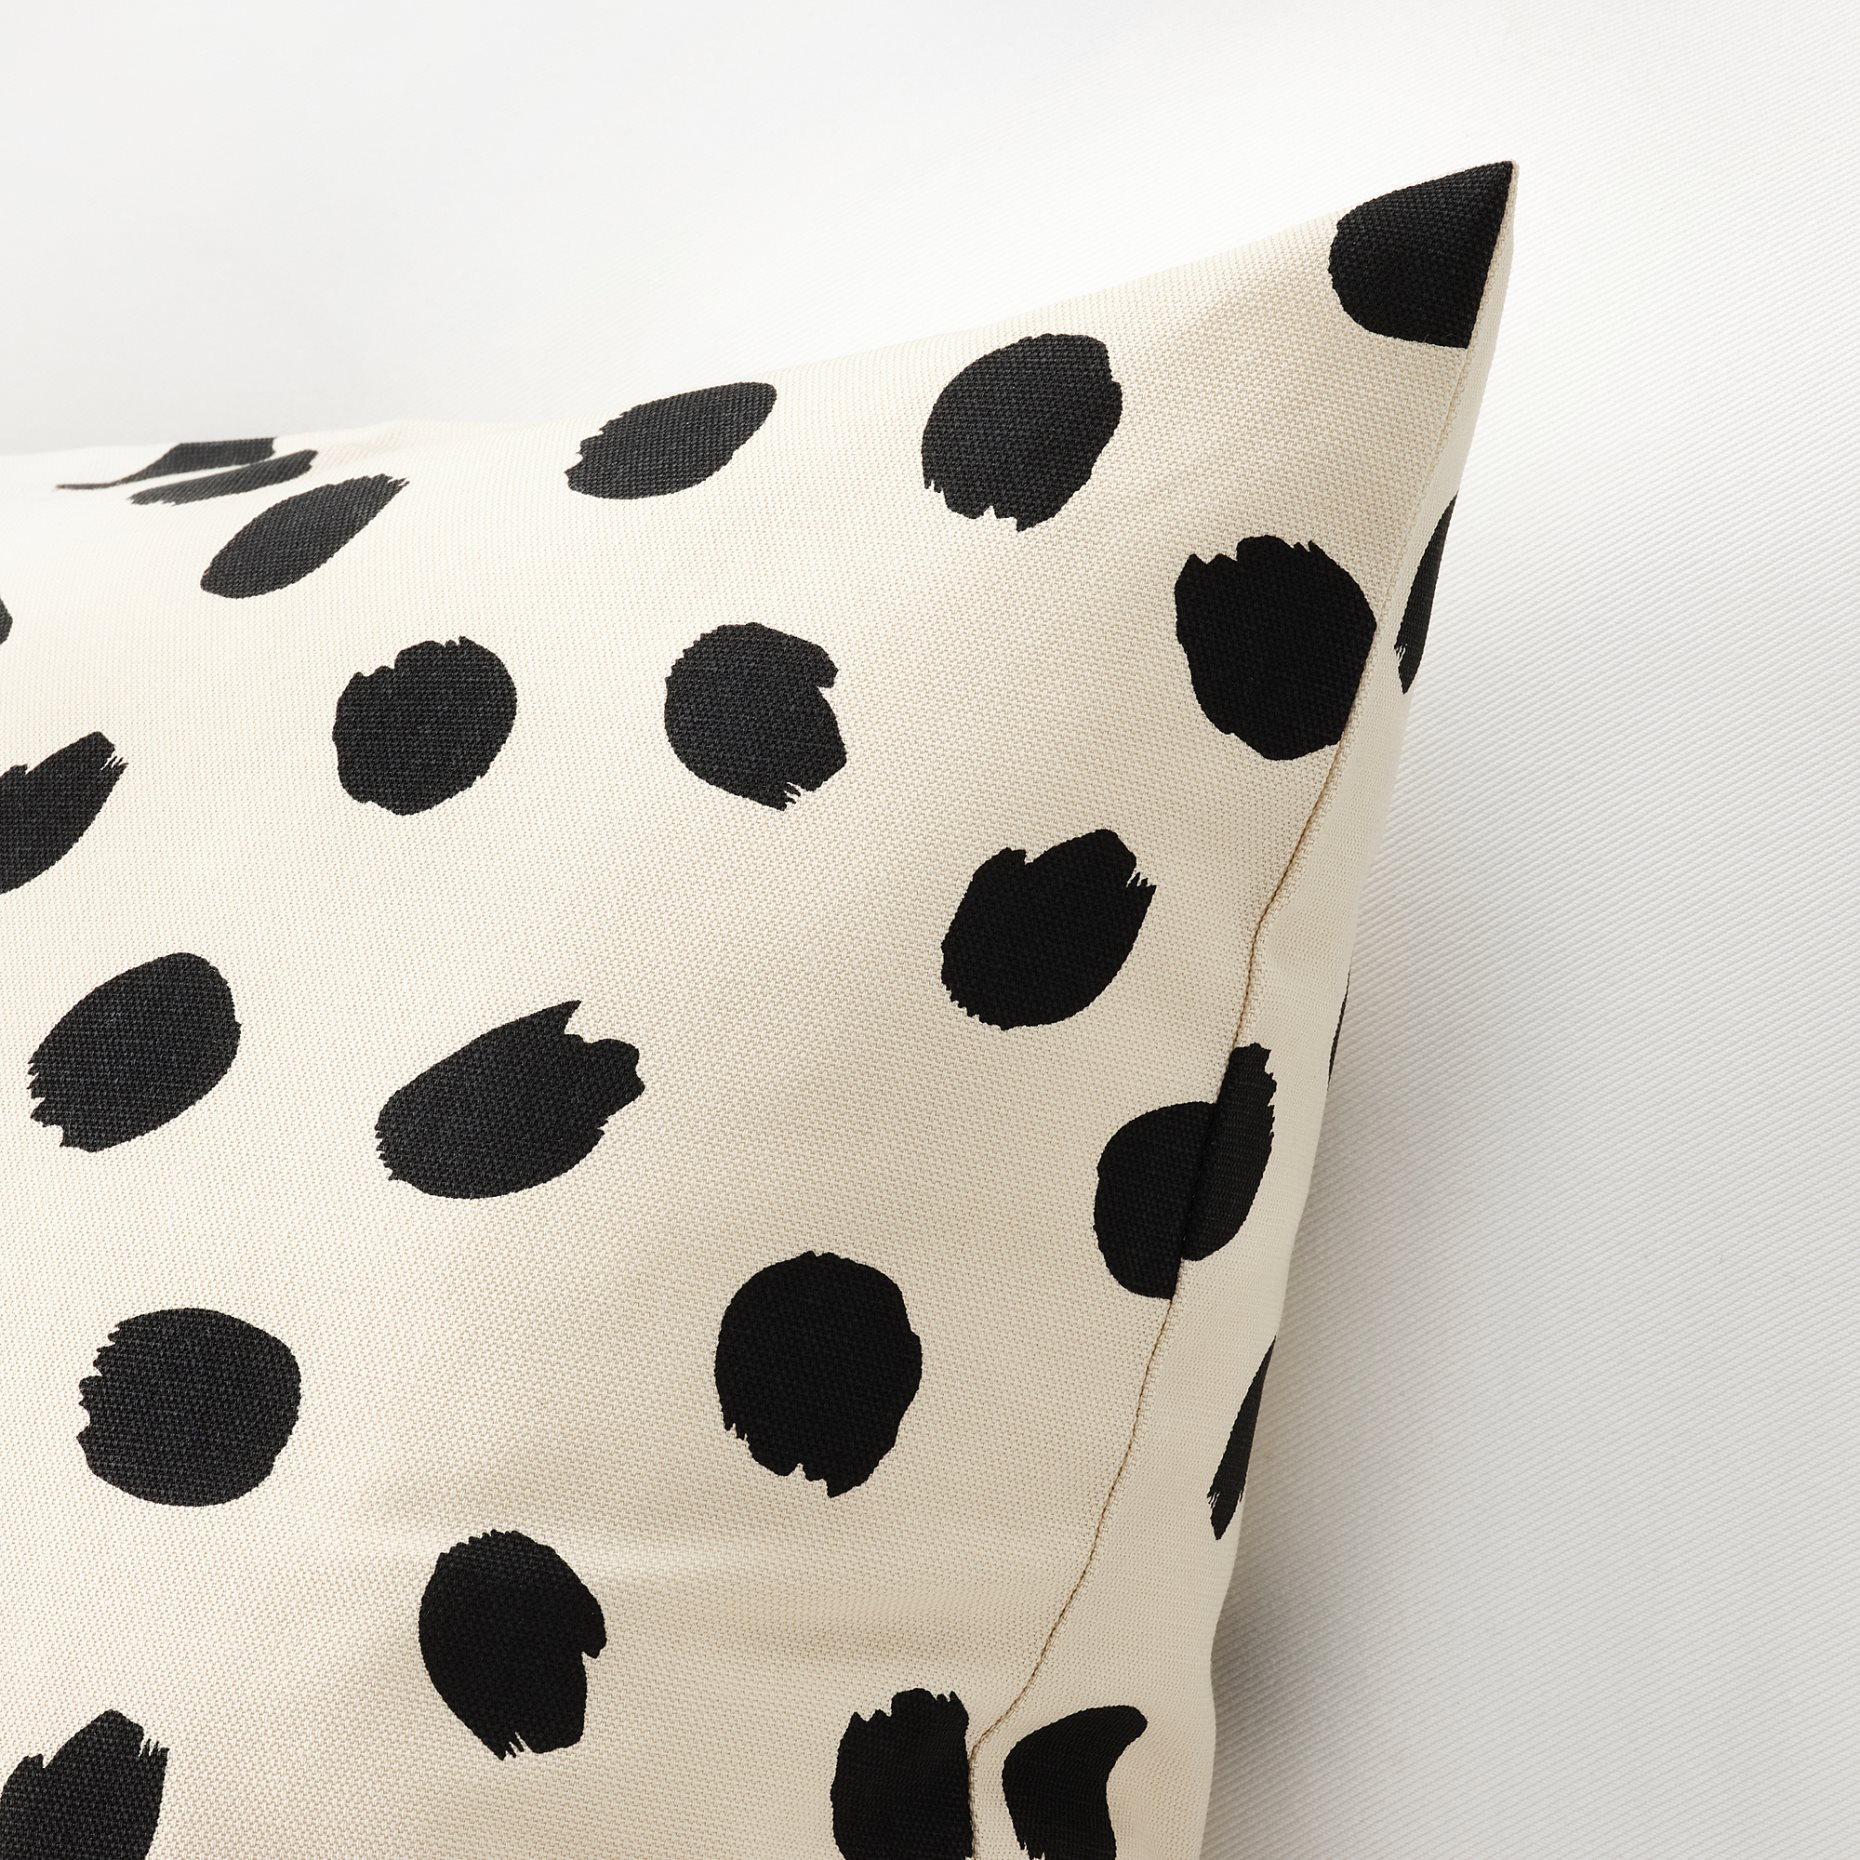 ODDNY, cushion cover/dot pattern, 50x50 cm, 405.238.27